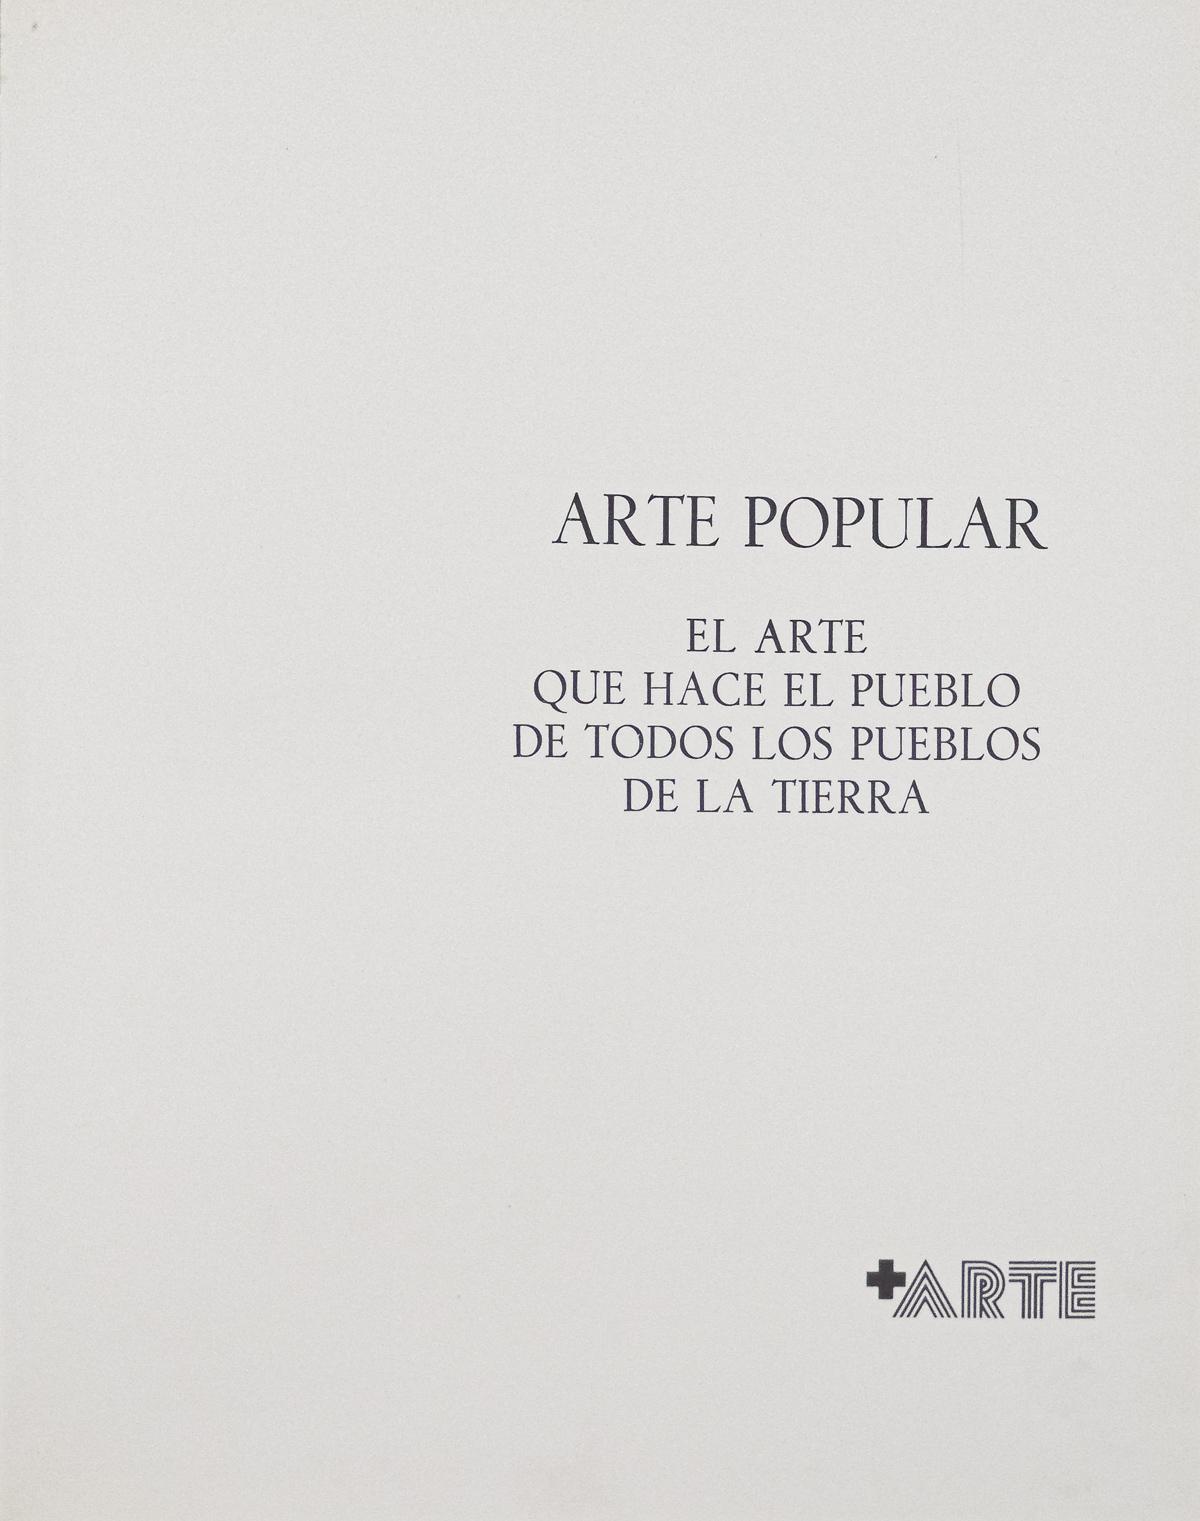 "ARTE POPULAR"